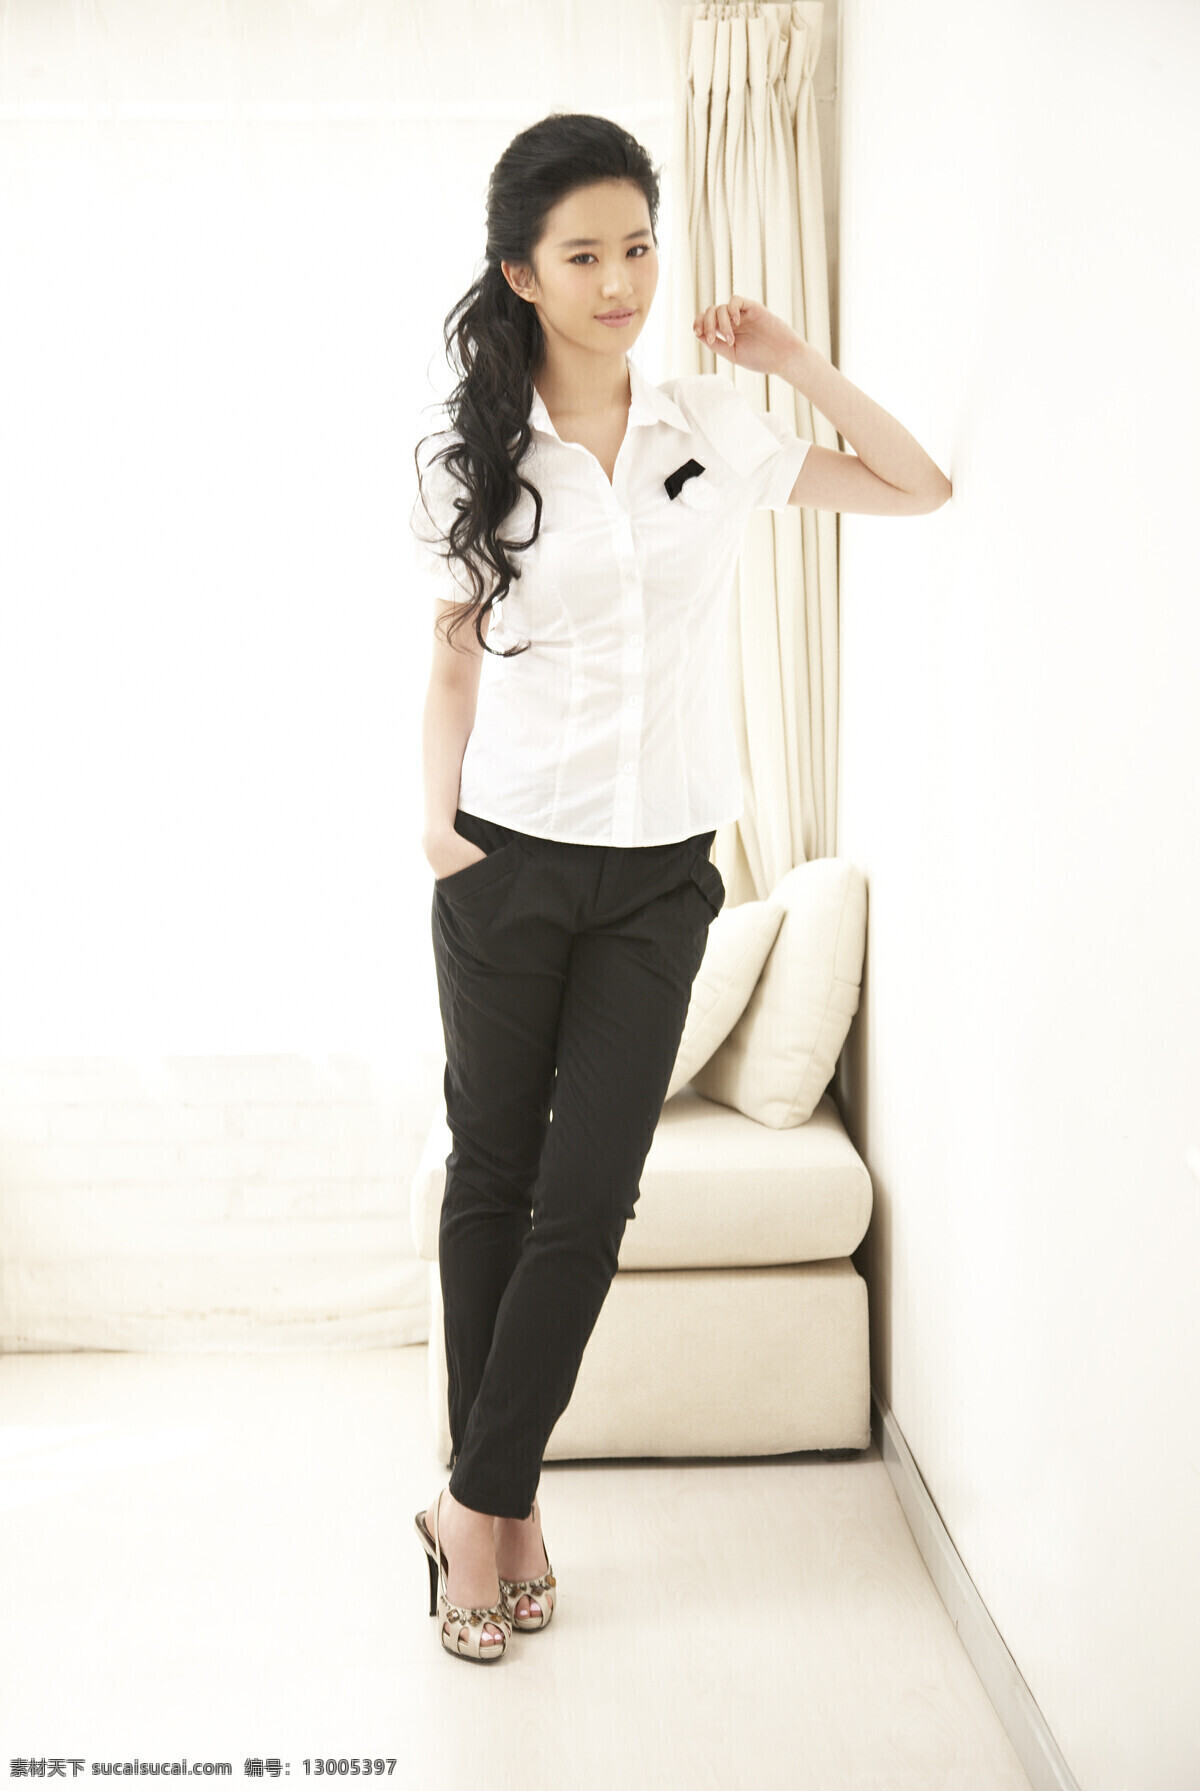 刘亦菲 女性女人 白色上衣 人物图库